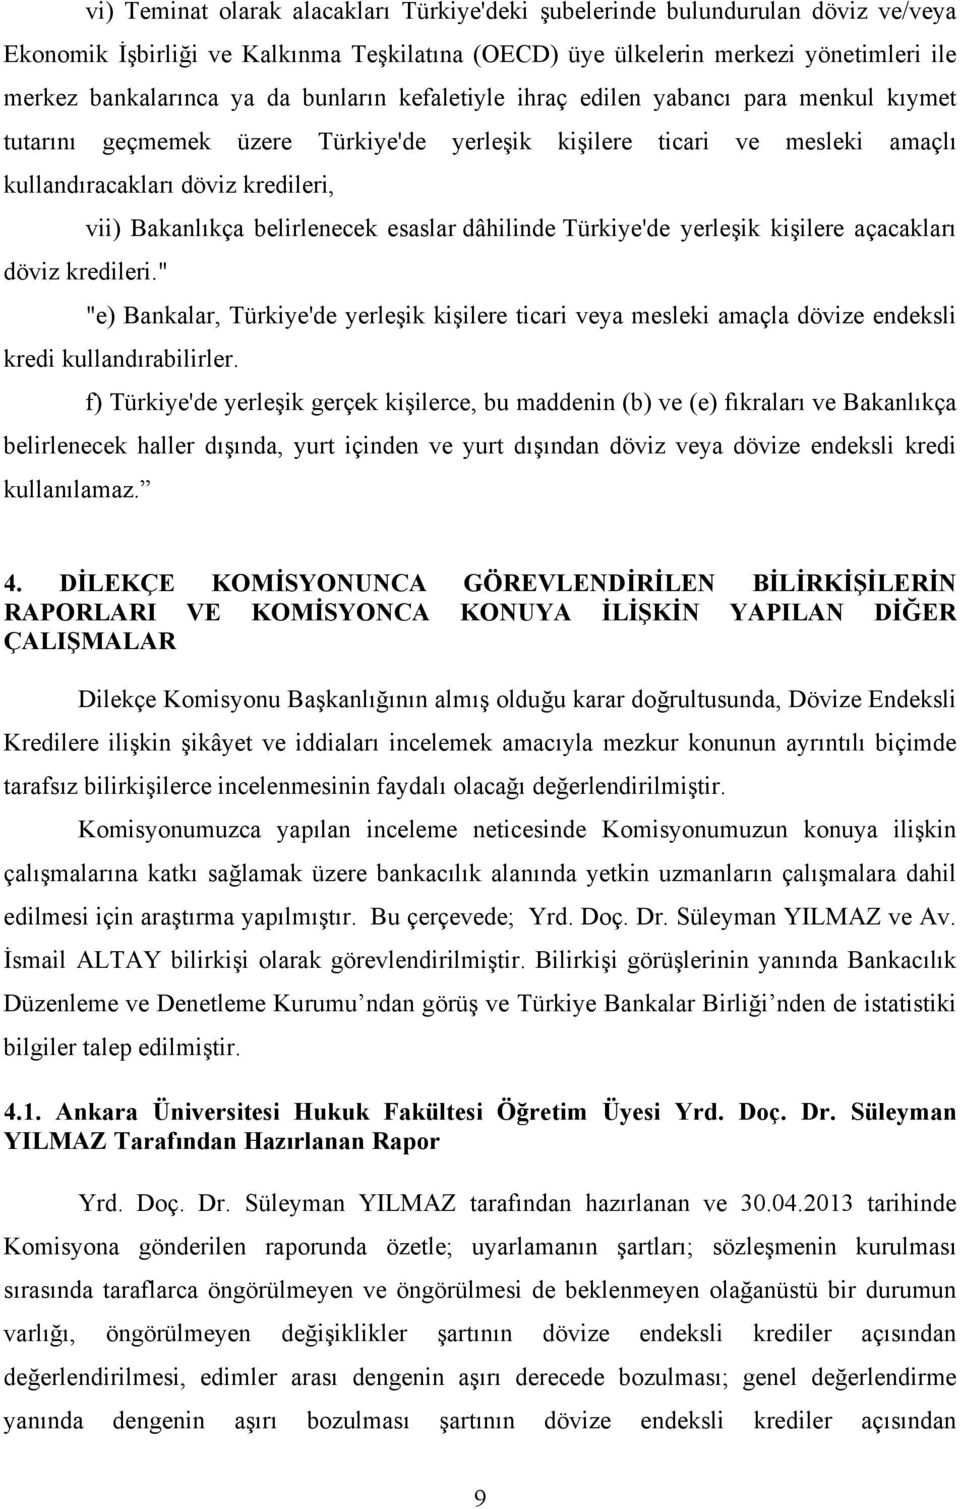 belirlenecek esaslar dâhilinde Türkiye'de yerleşik kişilere açacakları döviz kredileri." "e) Bankalar, Türkiye'de yerleşik kişilere ticari veya mesleki amaçla dövize endeksli kredi kullandırabilirler.